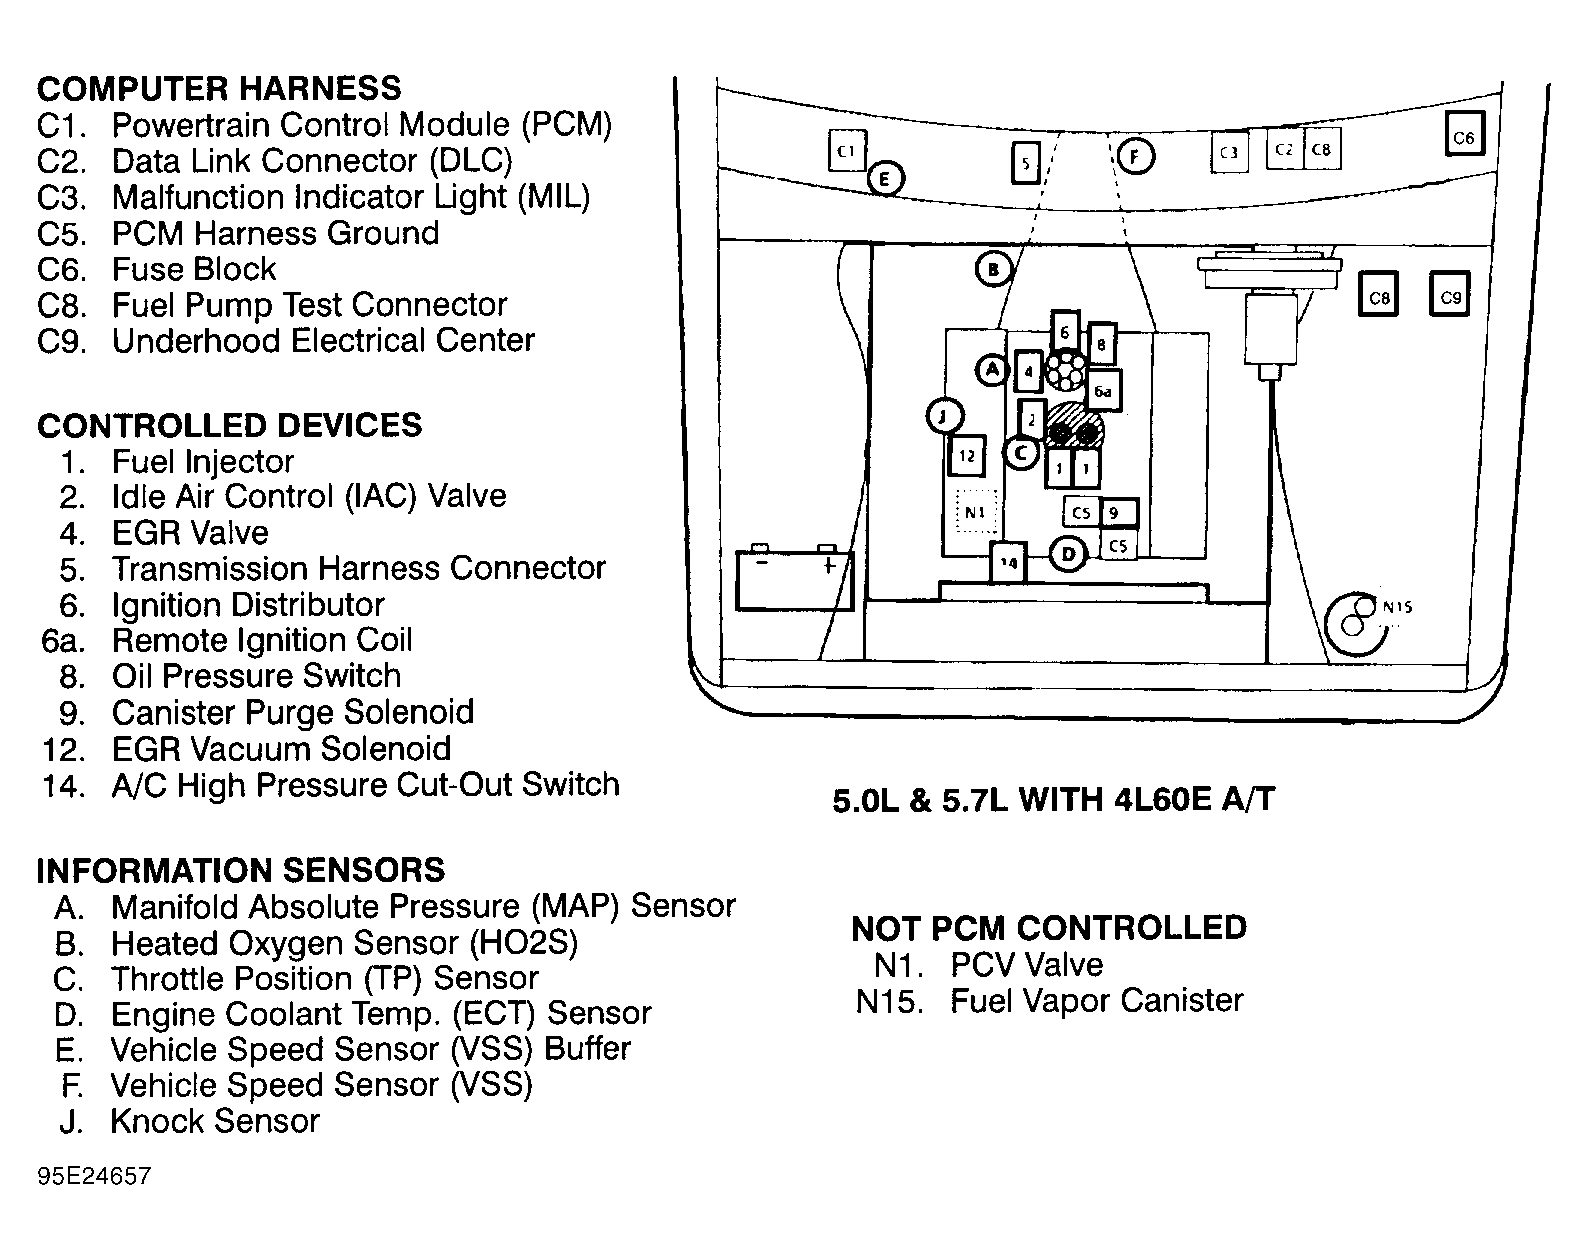 GMC Suburban C2500 1995 - Component Locations -  Engine Compartment (5.0L & 5.7L W/4L60E A/T)